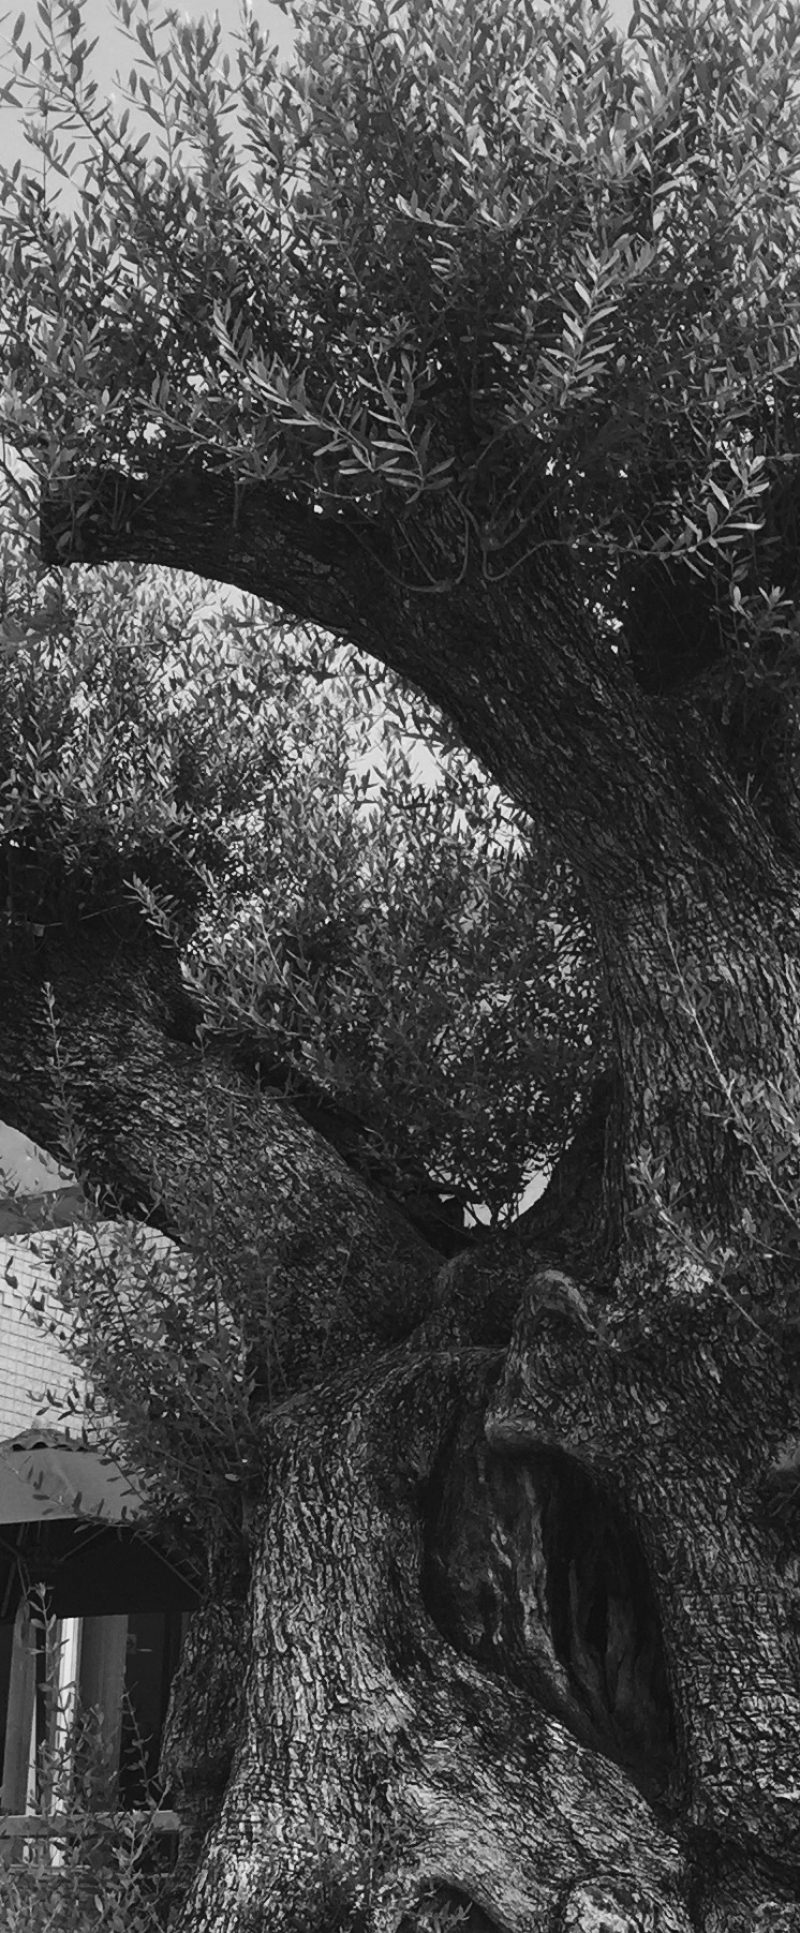 「ミレニアムオリーブ 樹齢1000年 オリーブ」の画像です。